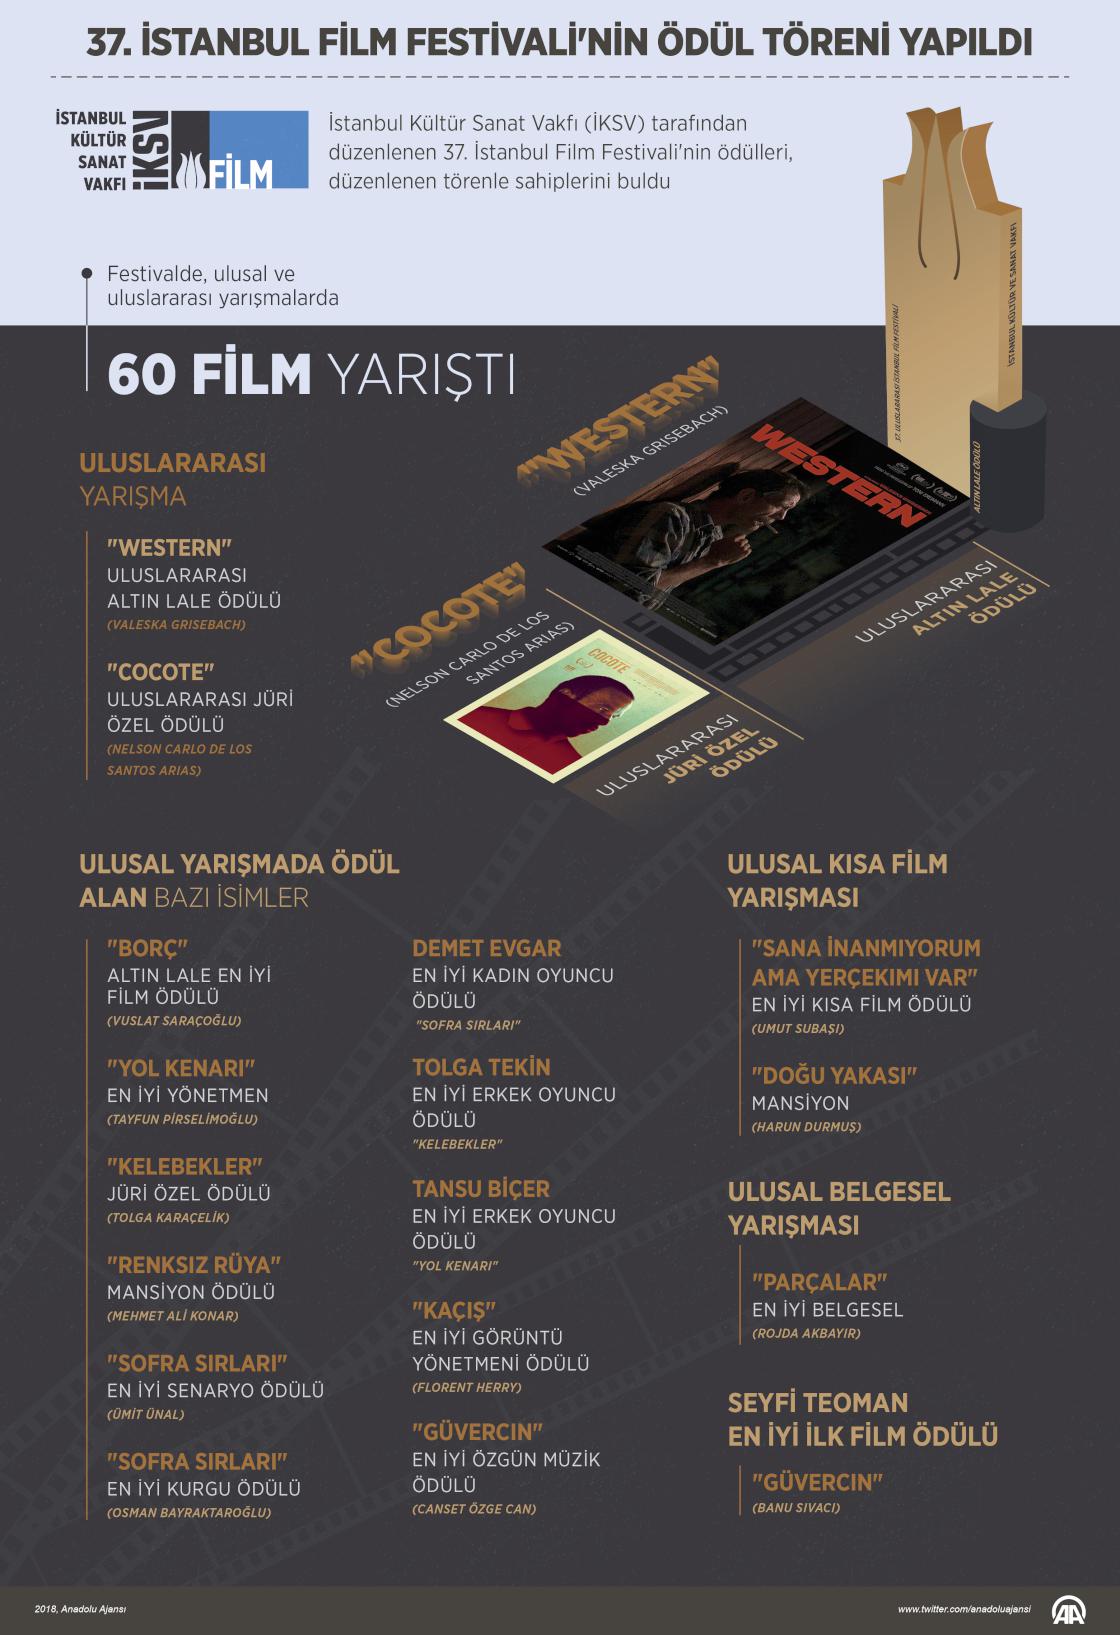 37. İstanbul Film Festivali'nin ödül töreni yapıldı